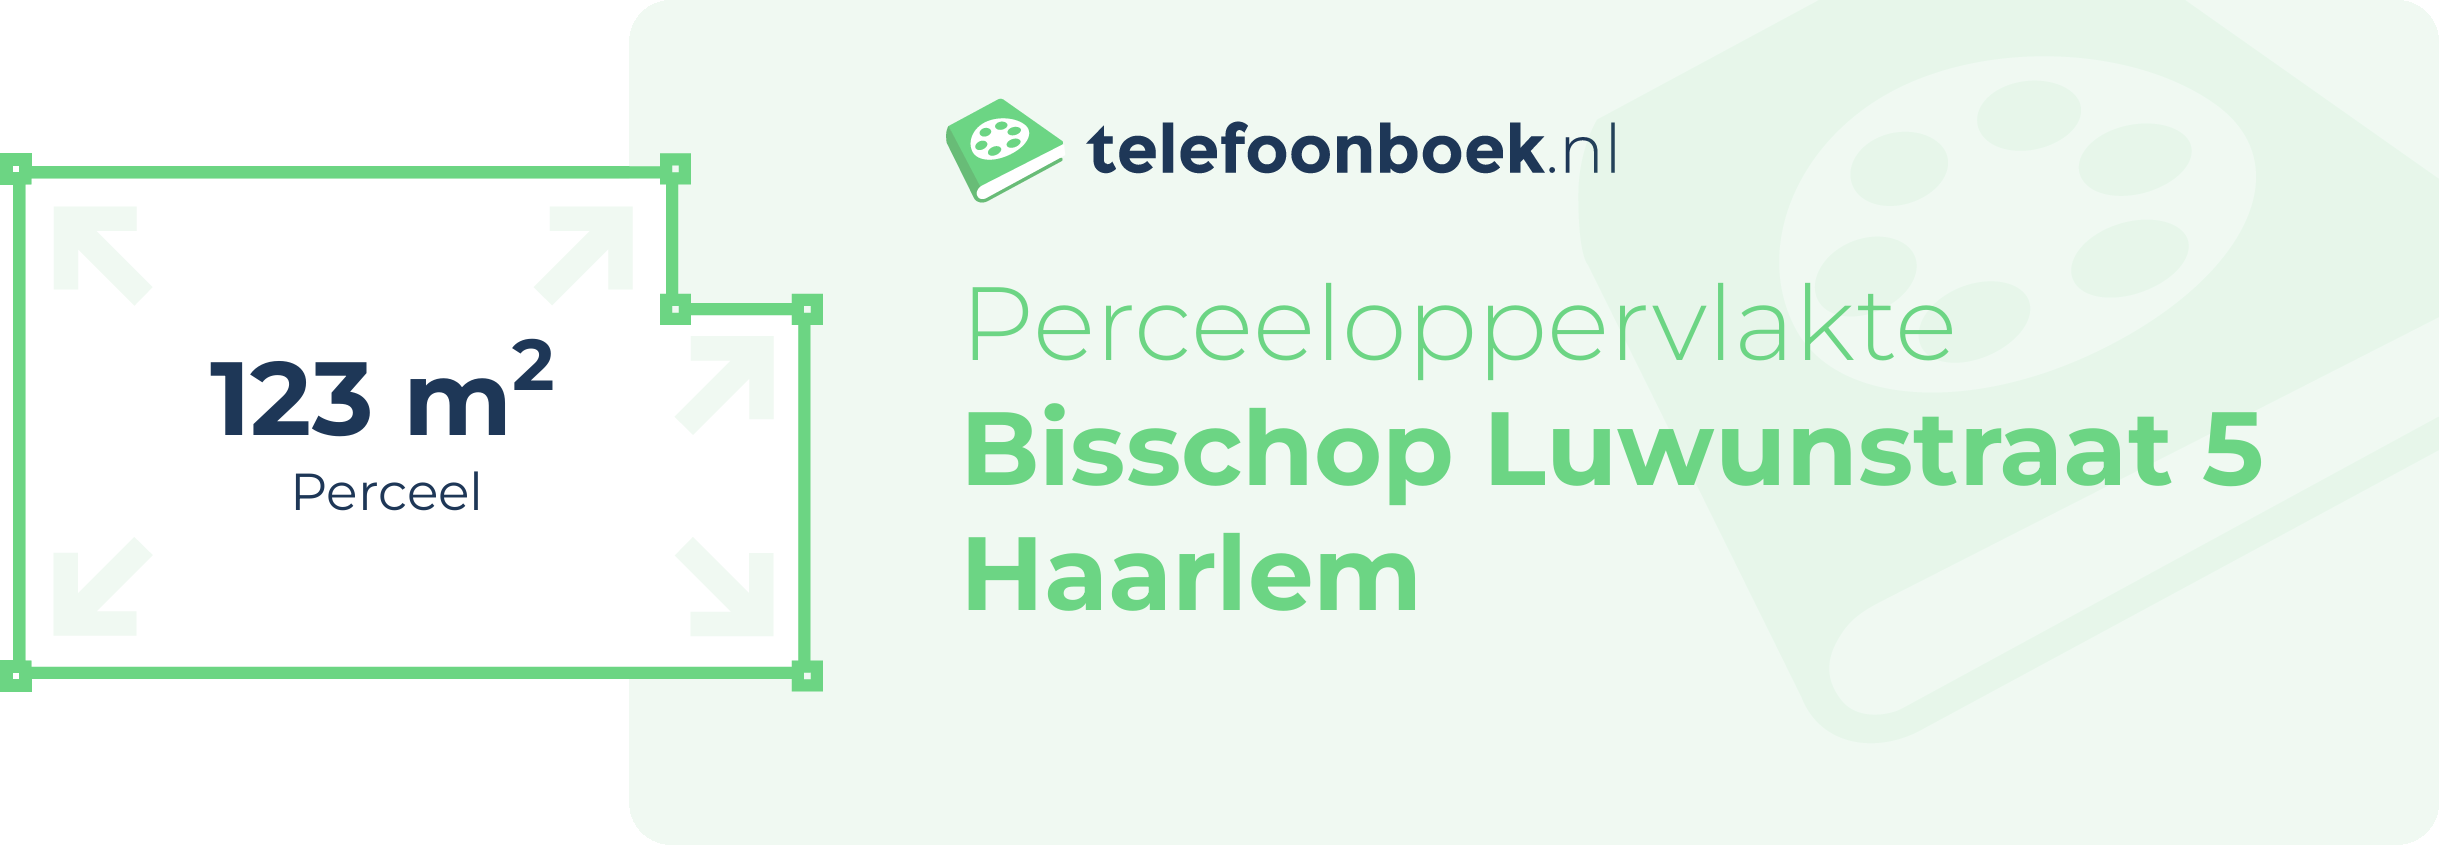 Perceeloppervlakte Bisschop Luwunstraat 5 Haarlem